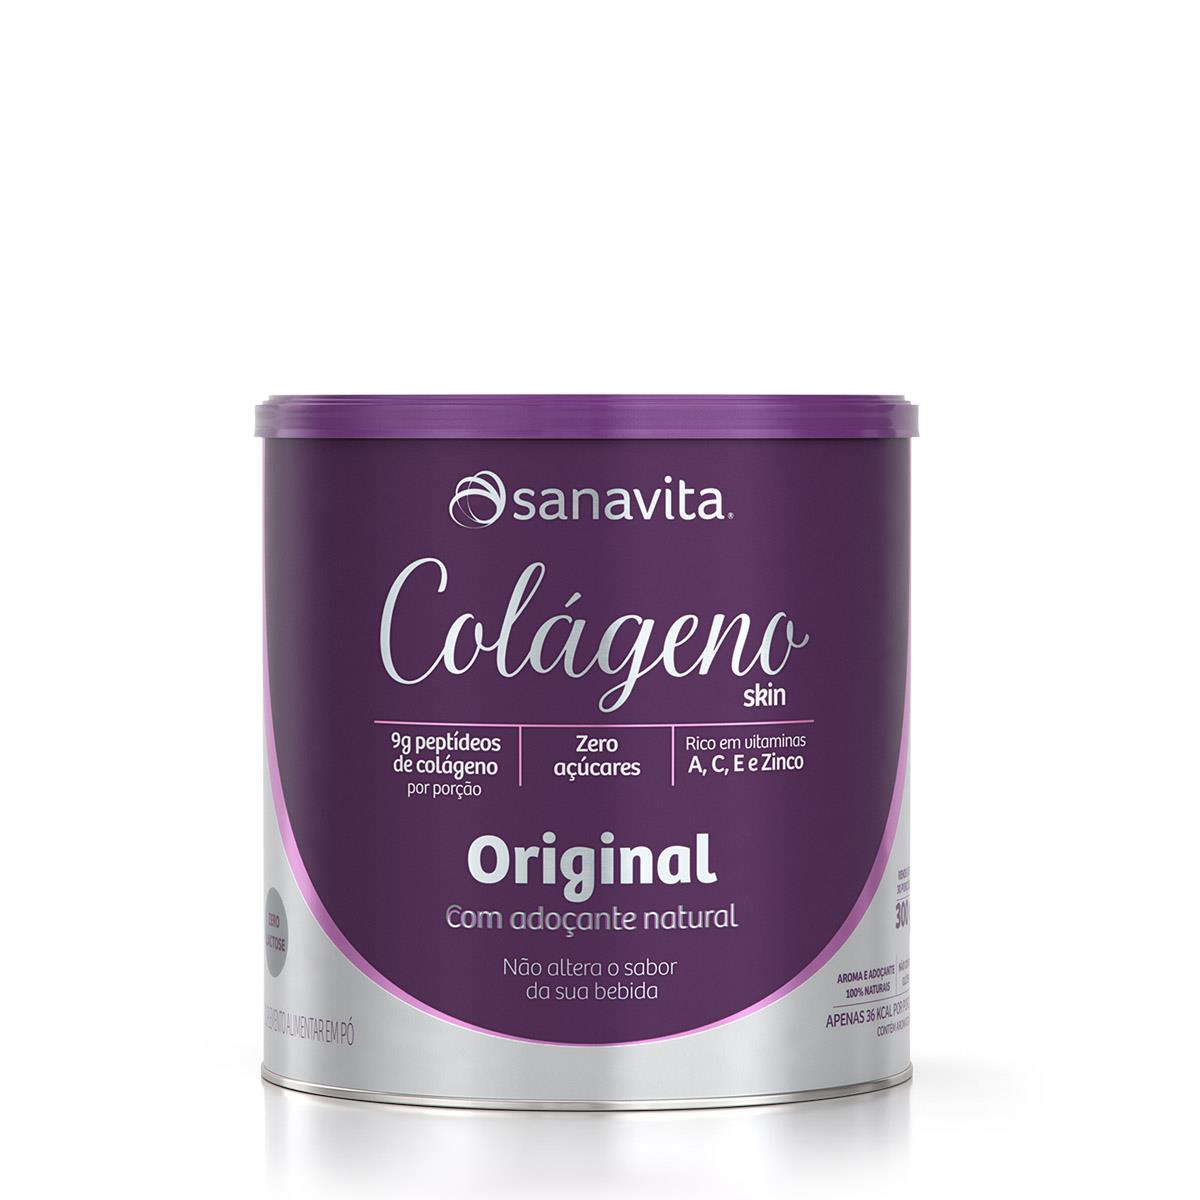 Colágeno Skin - Original - 300g